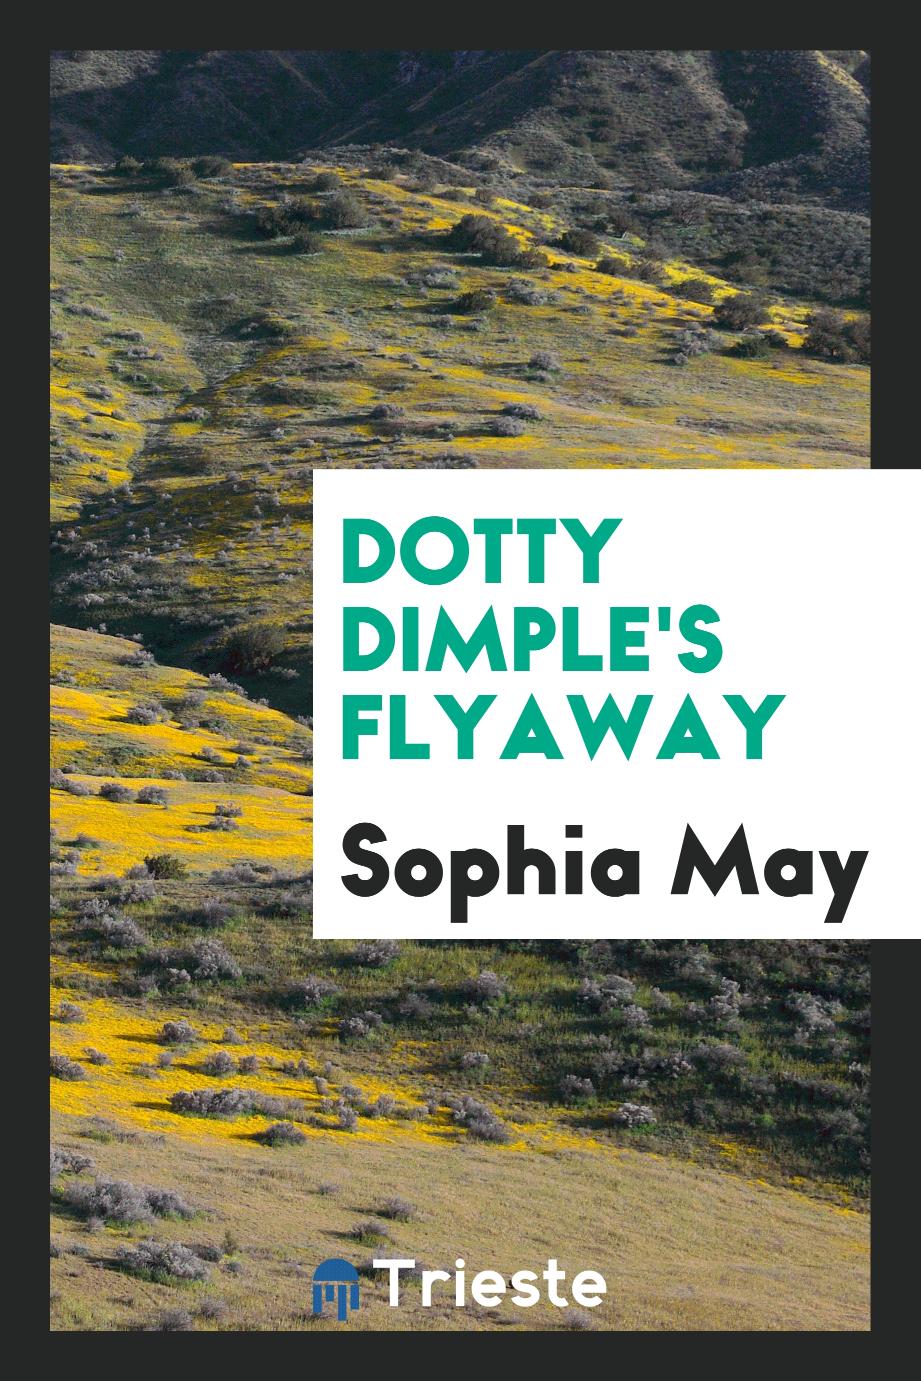 Dotty Dimple's flyaway